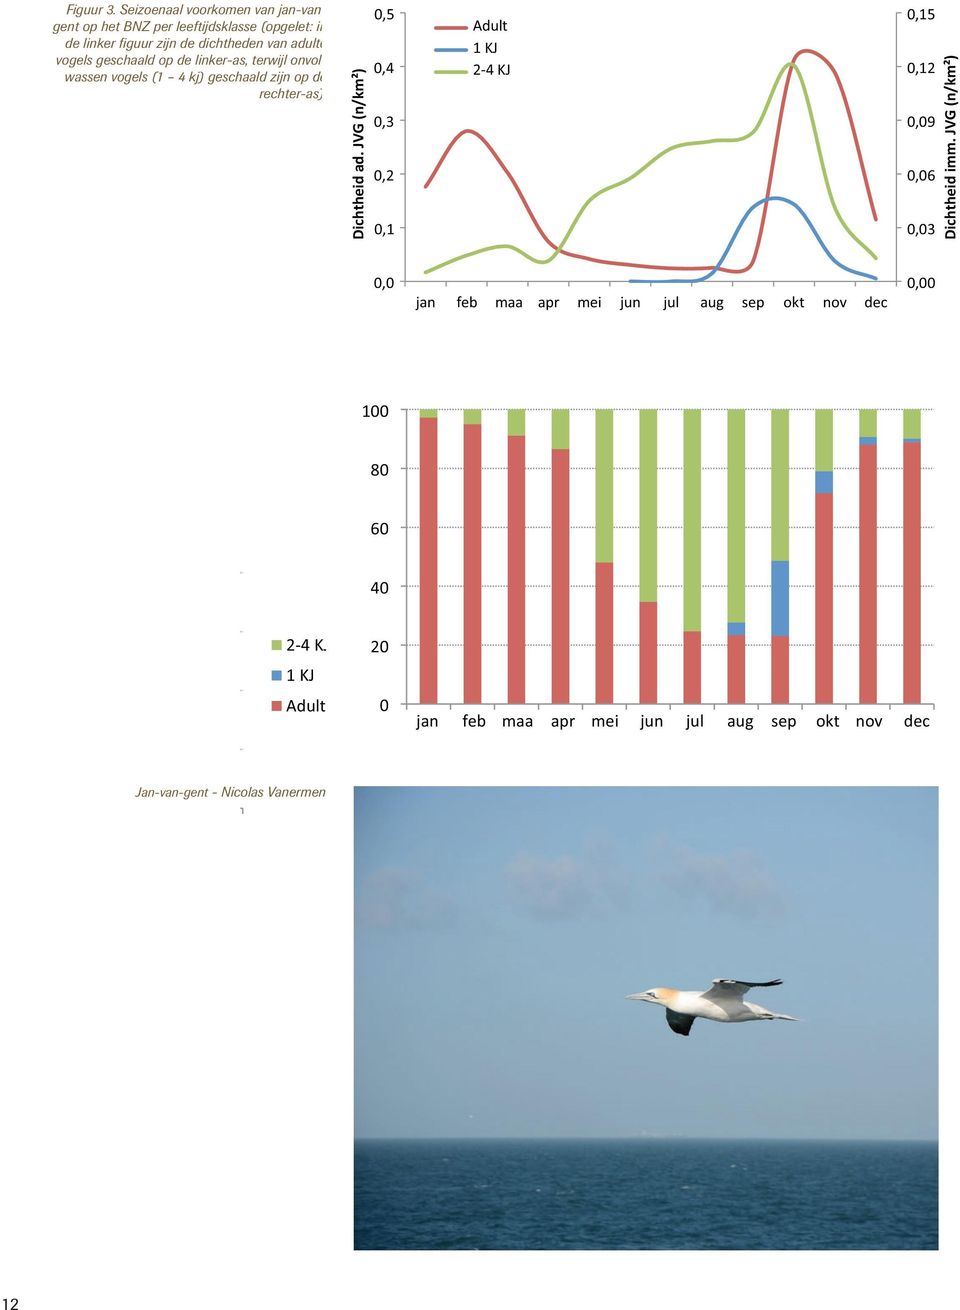 vogels (1 4 kj) geschaald zijn op de KJ rechter-as). 0,15 0,12 0,09 0,06 0,03 Dichtheid imm. JVG (n/km²) Dichtheid ad. JVG (n/km²) 0,5 0,3 0,2 0,1 0,0 Adult Dichtheid ad.